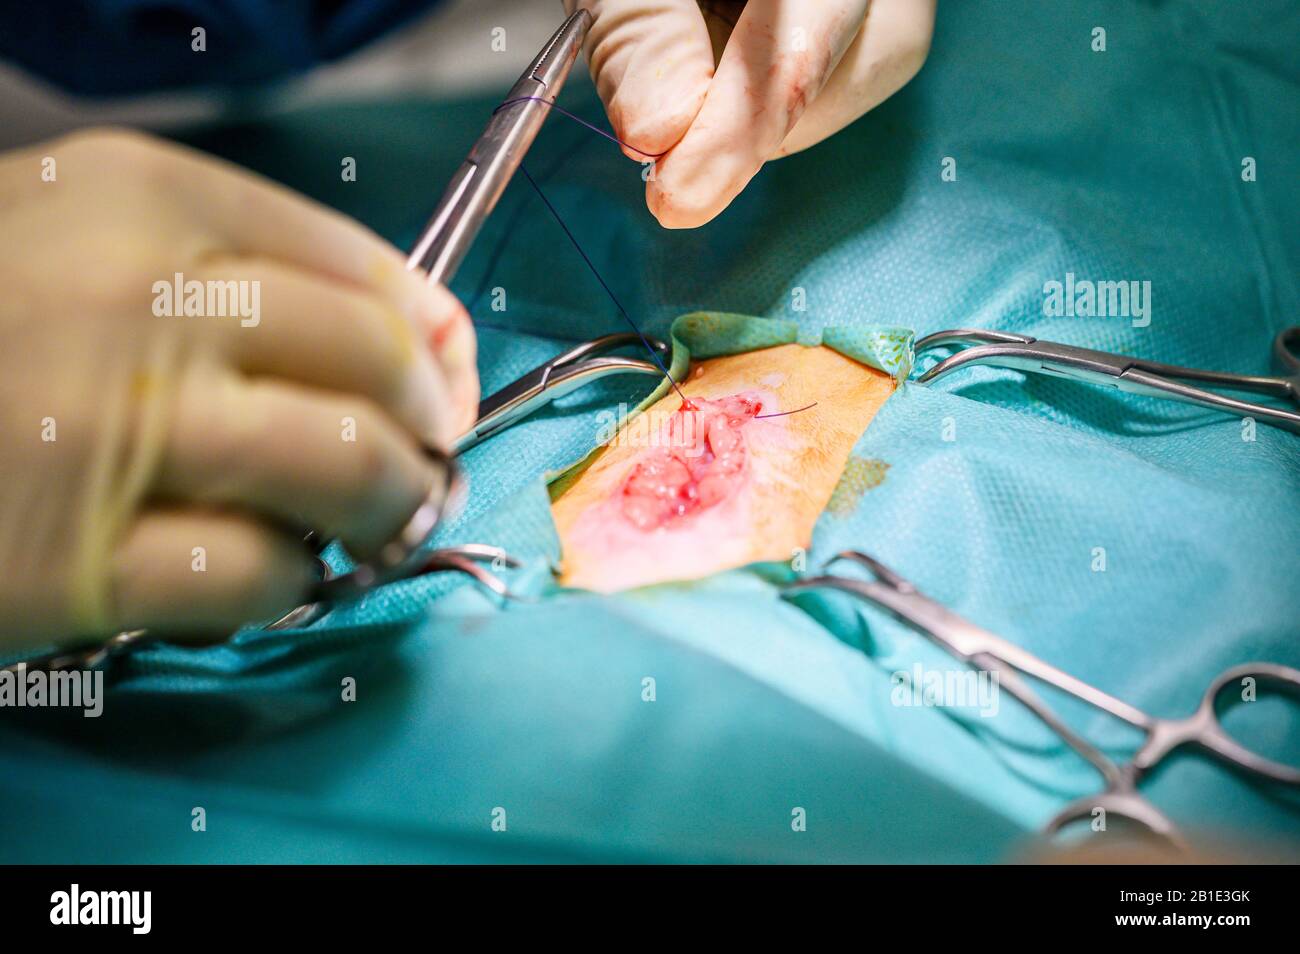 Vorgang bei einem Patienten. Die Hände des Chirurgen in Schutzhandschuhen, die mit medizinischen Werkzeugen operiert werden. Stockfoto